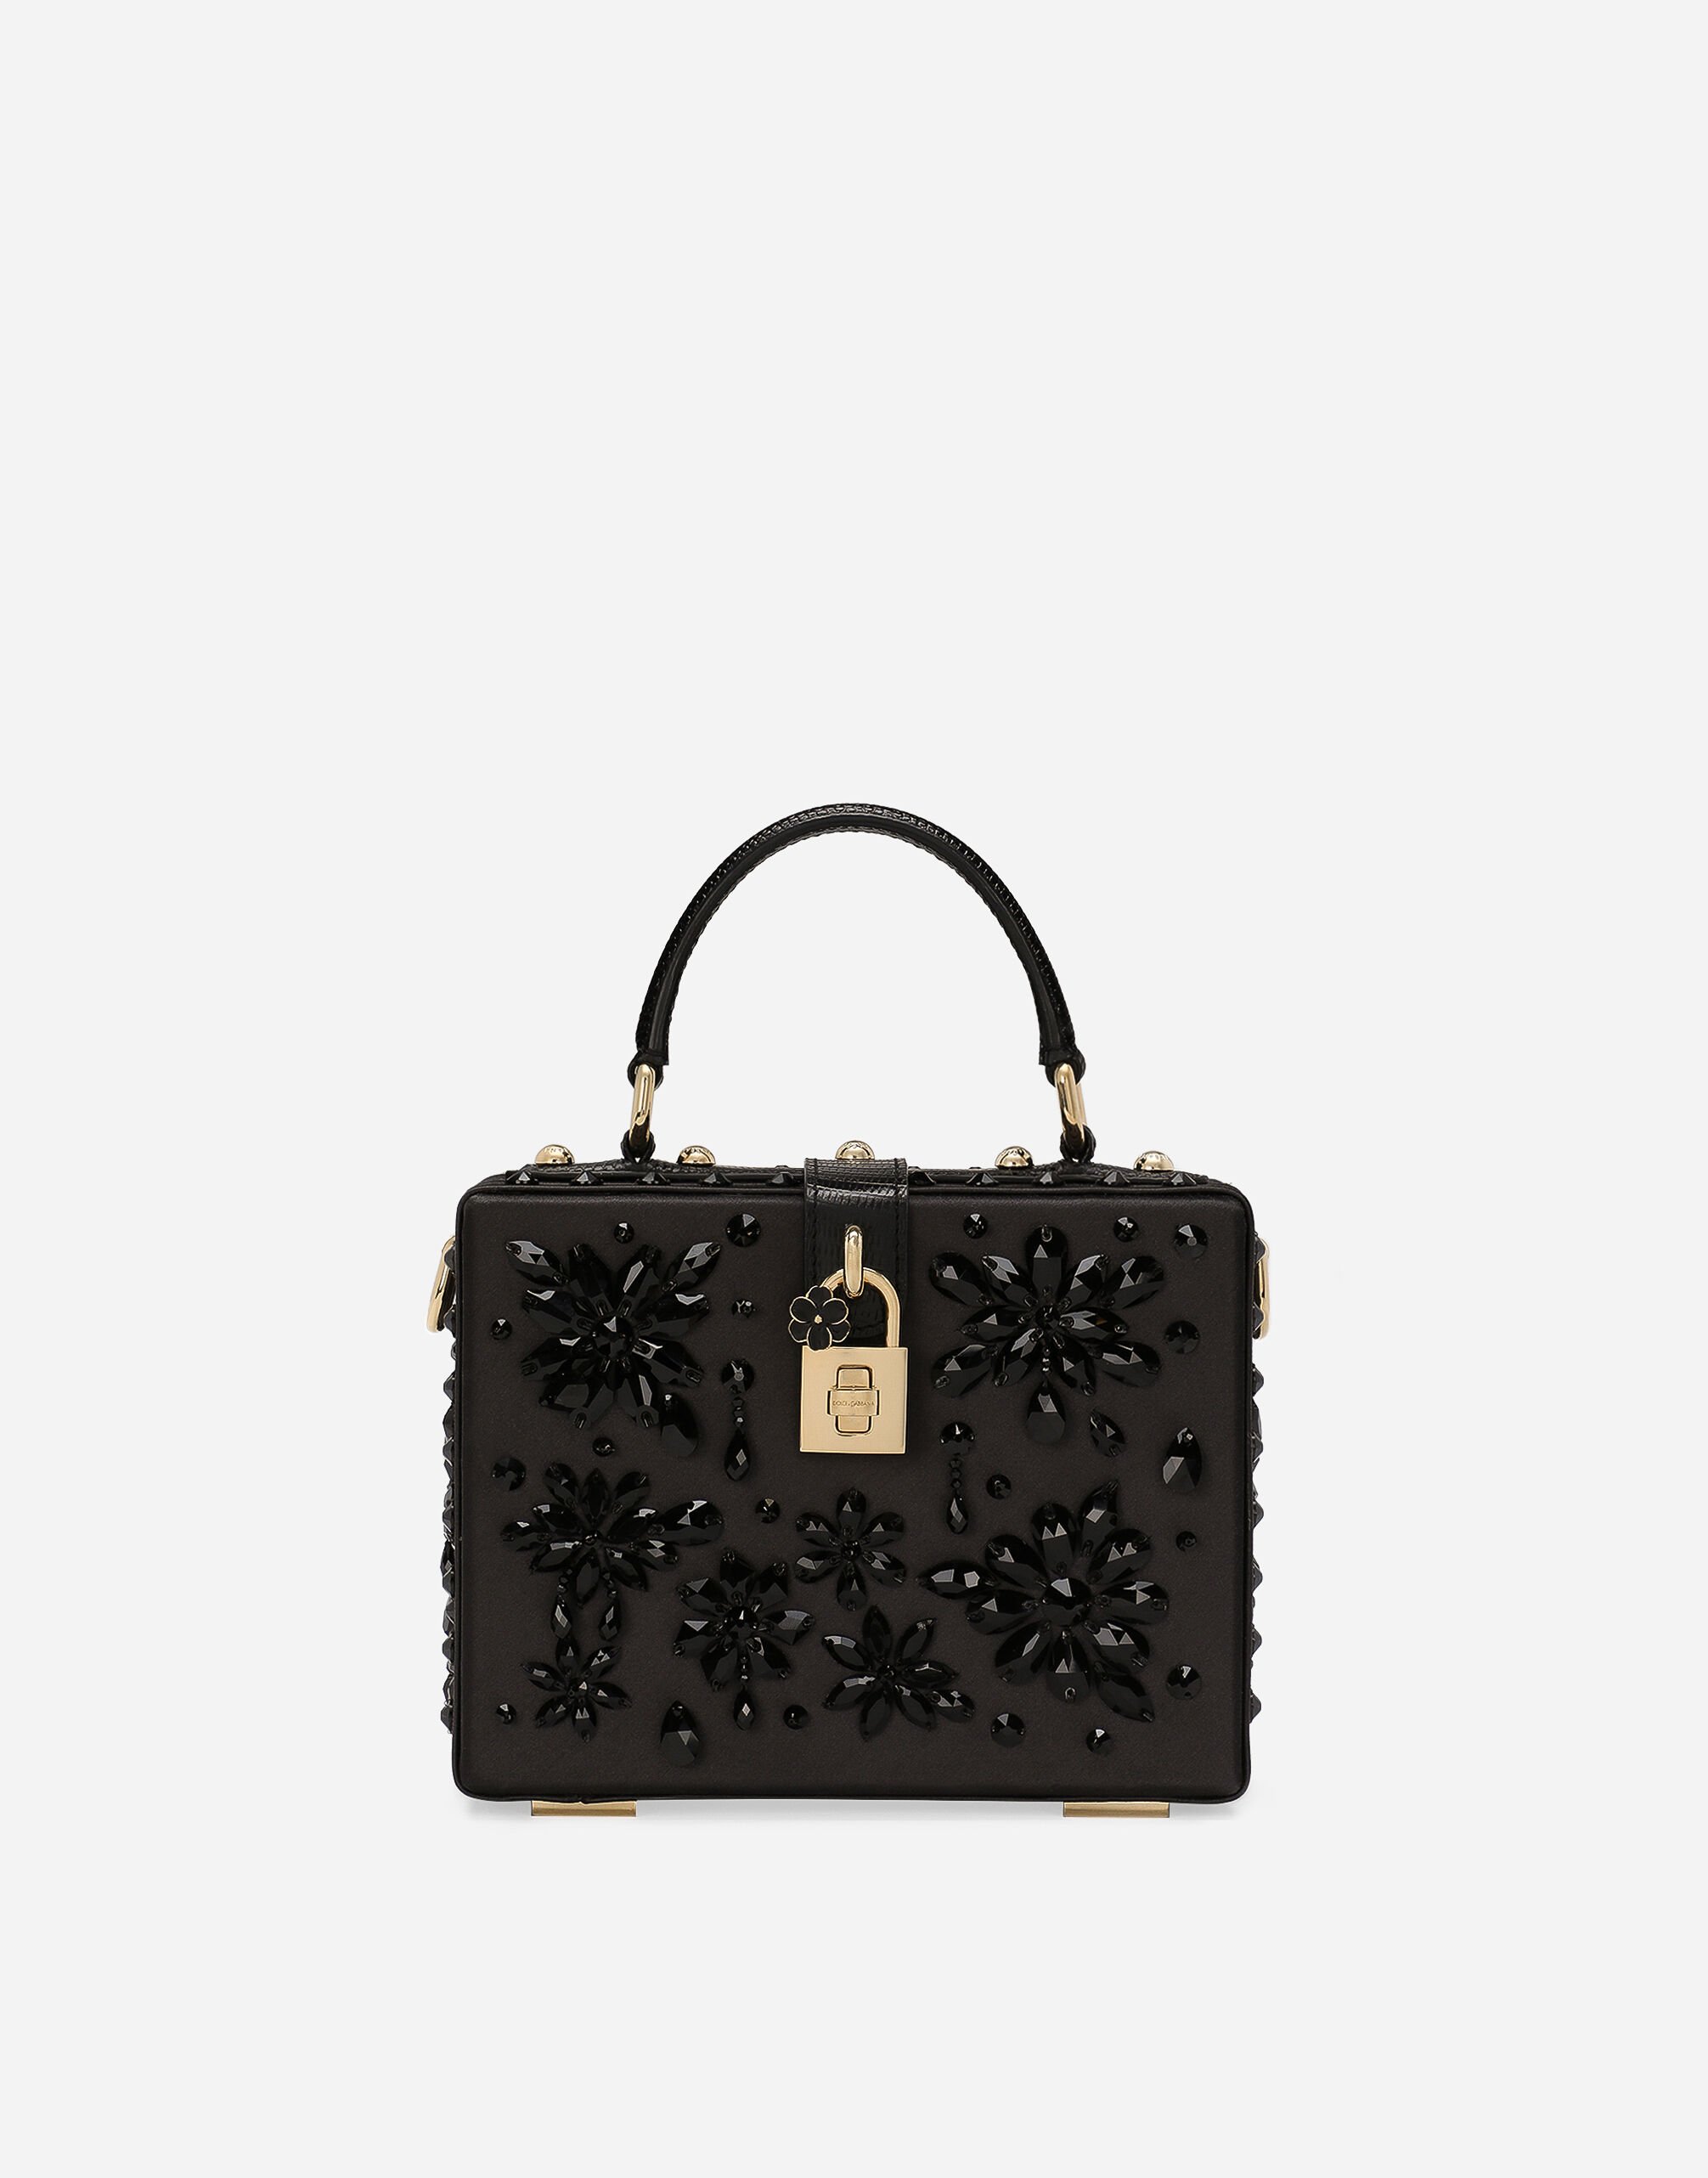 Dolce & Gabbana Dolce Box handbag Black BB6002A1001